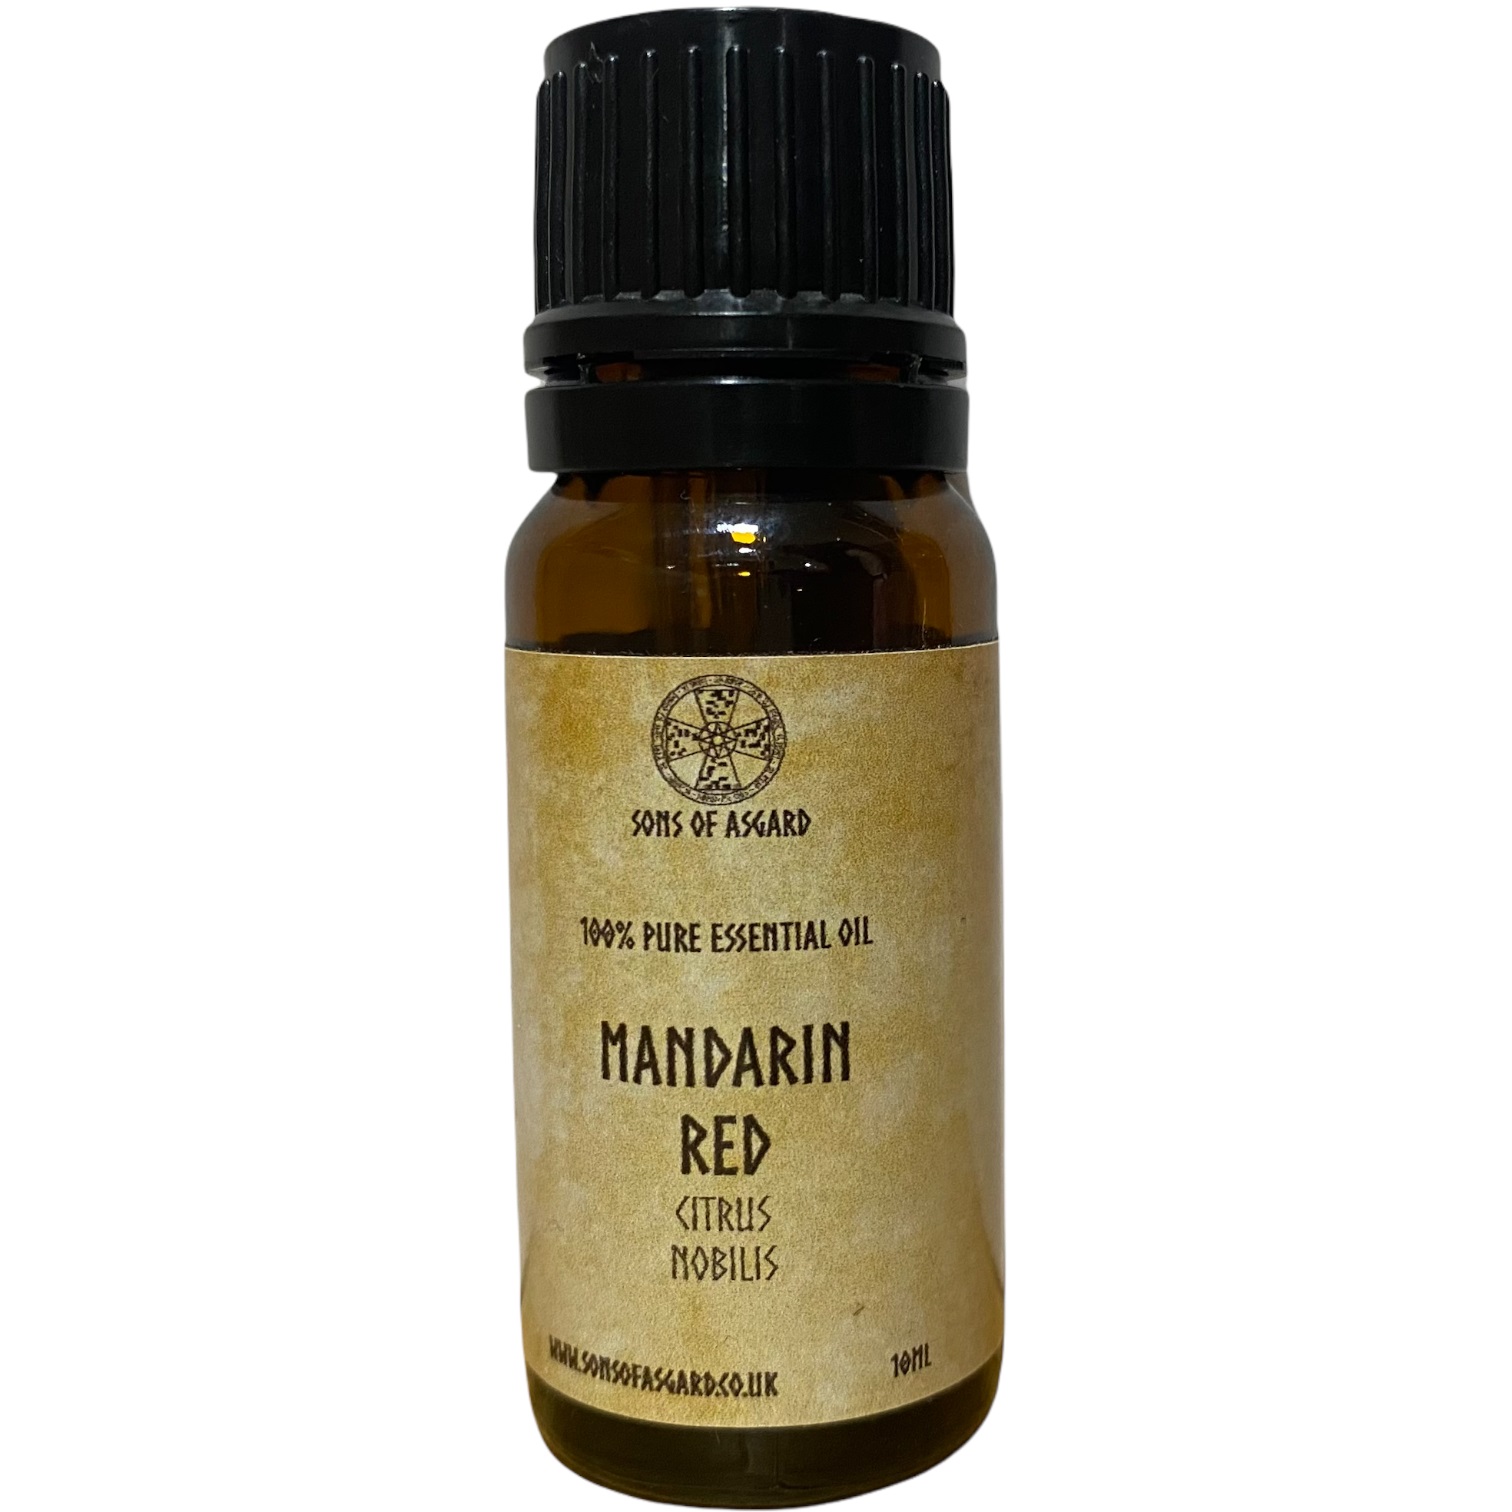 Mandarin Red - Pure Essential Oil